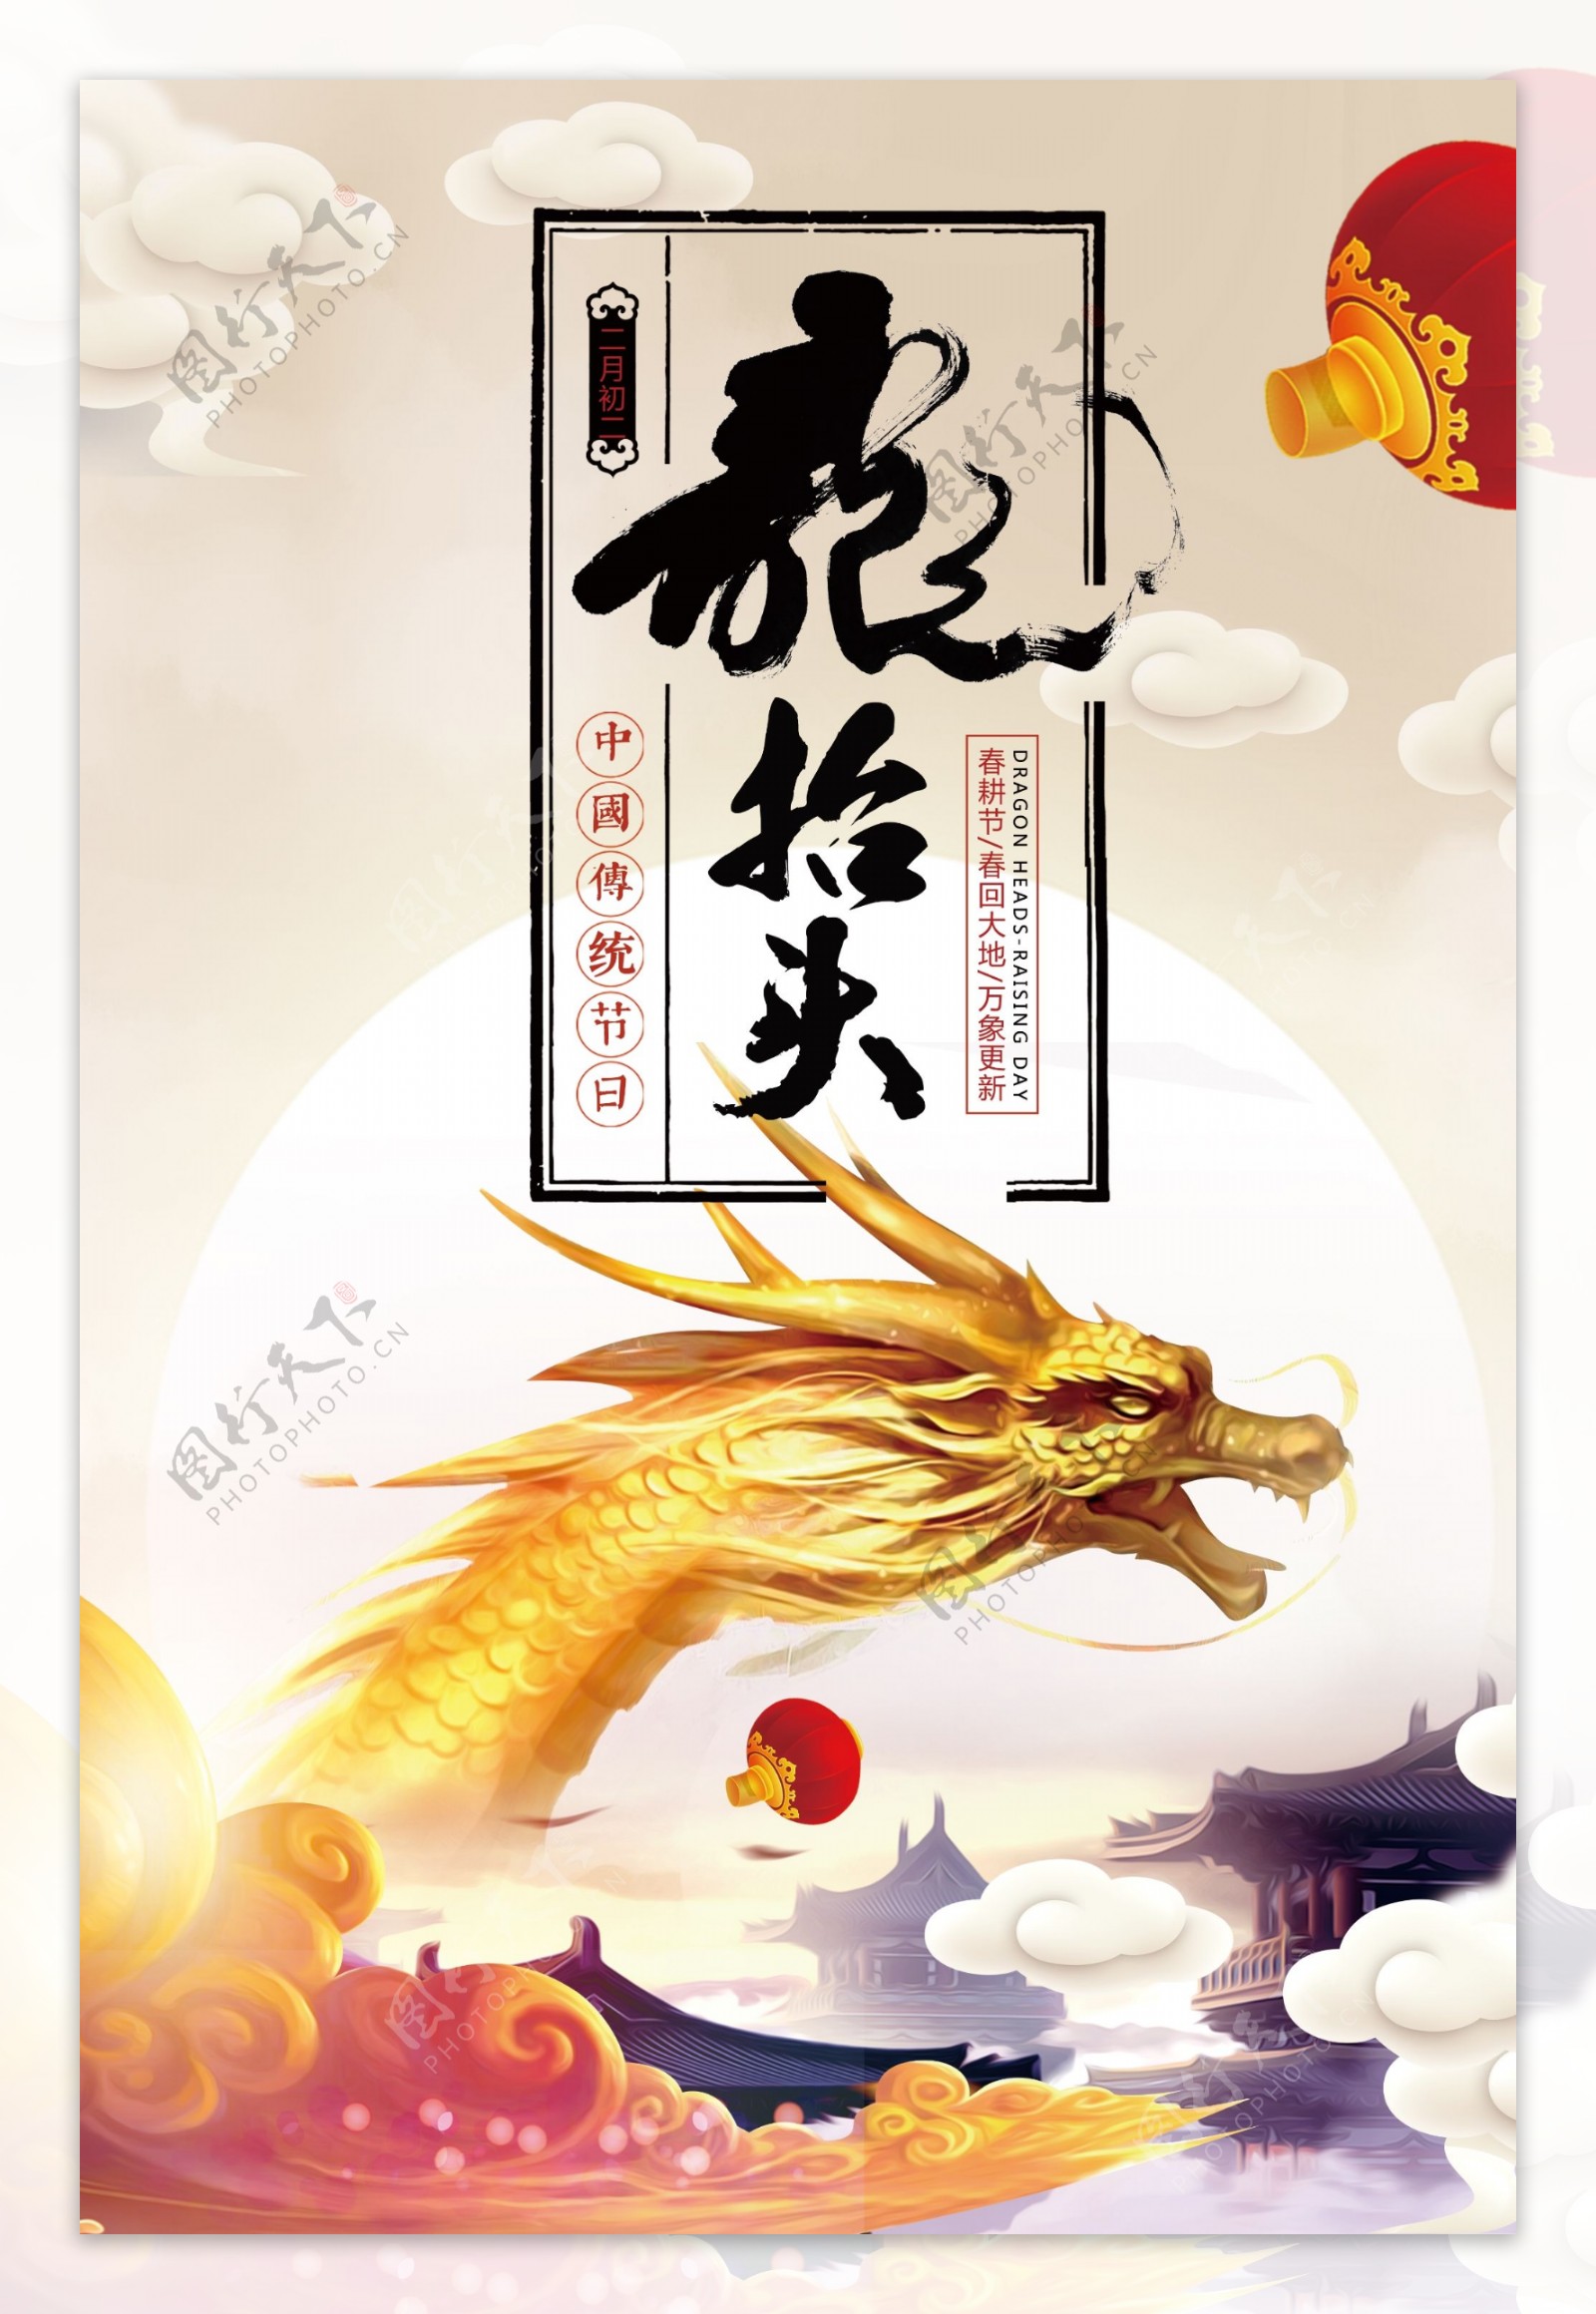 中国传统节日龙抬头海报设计